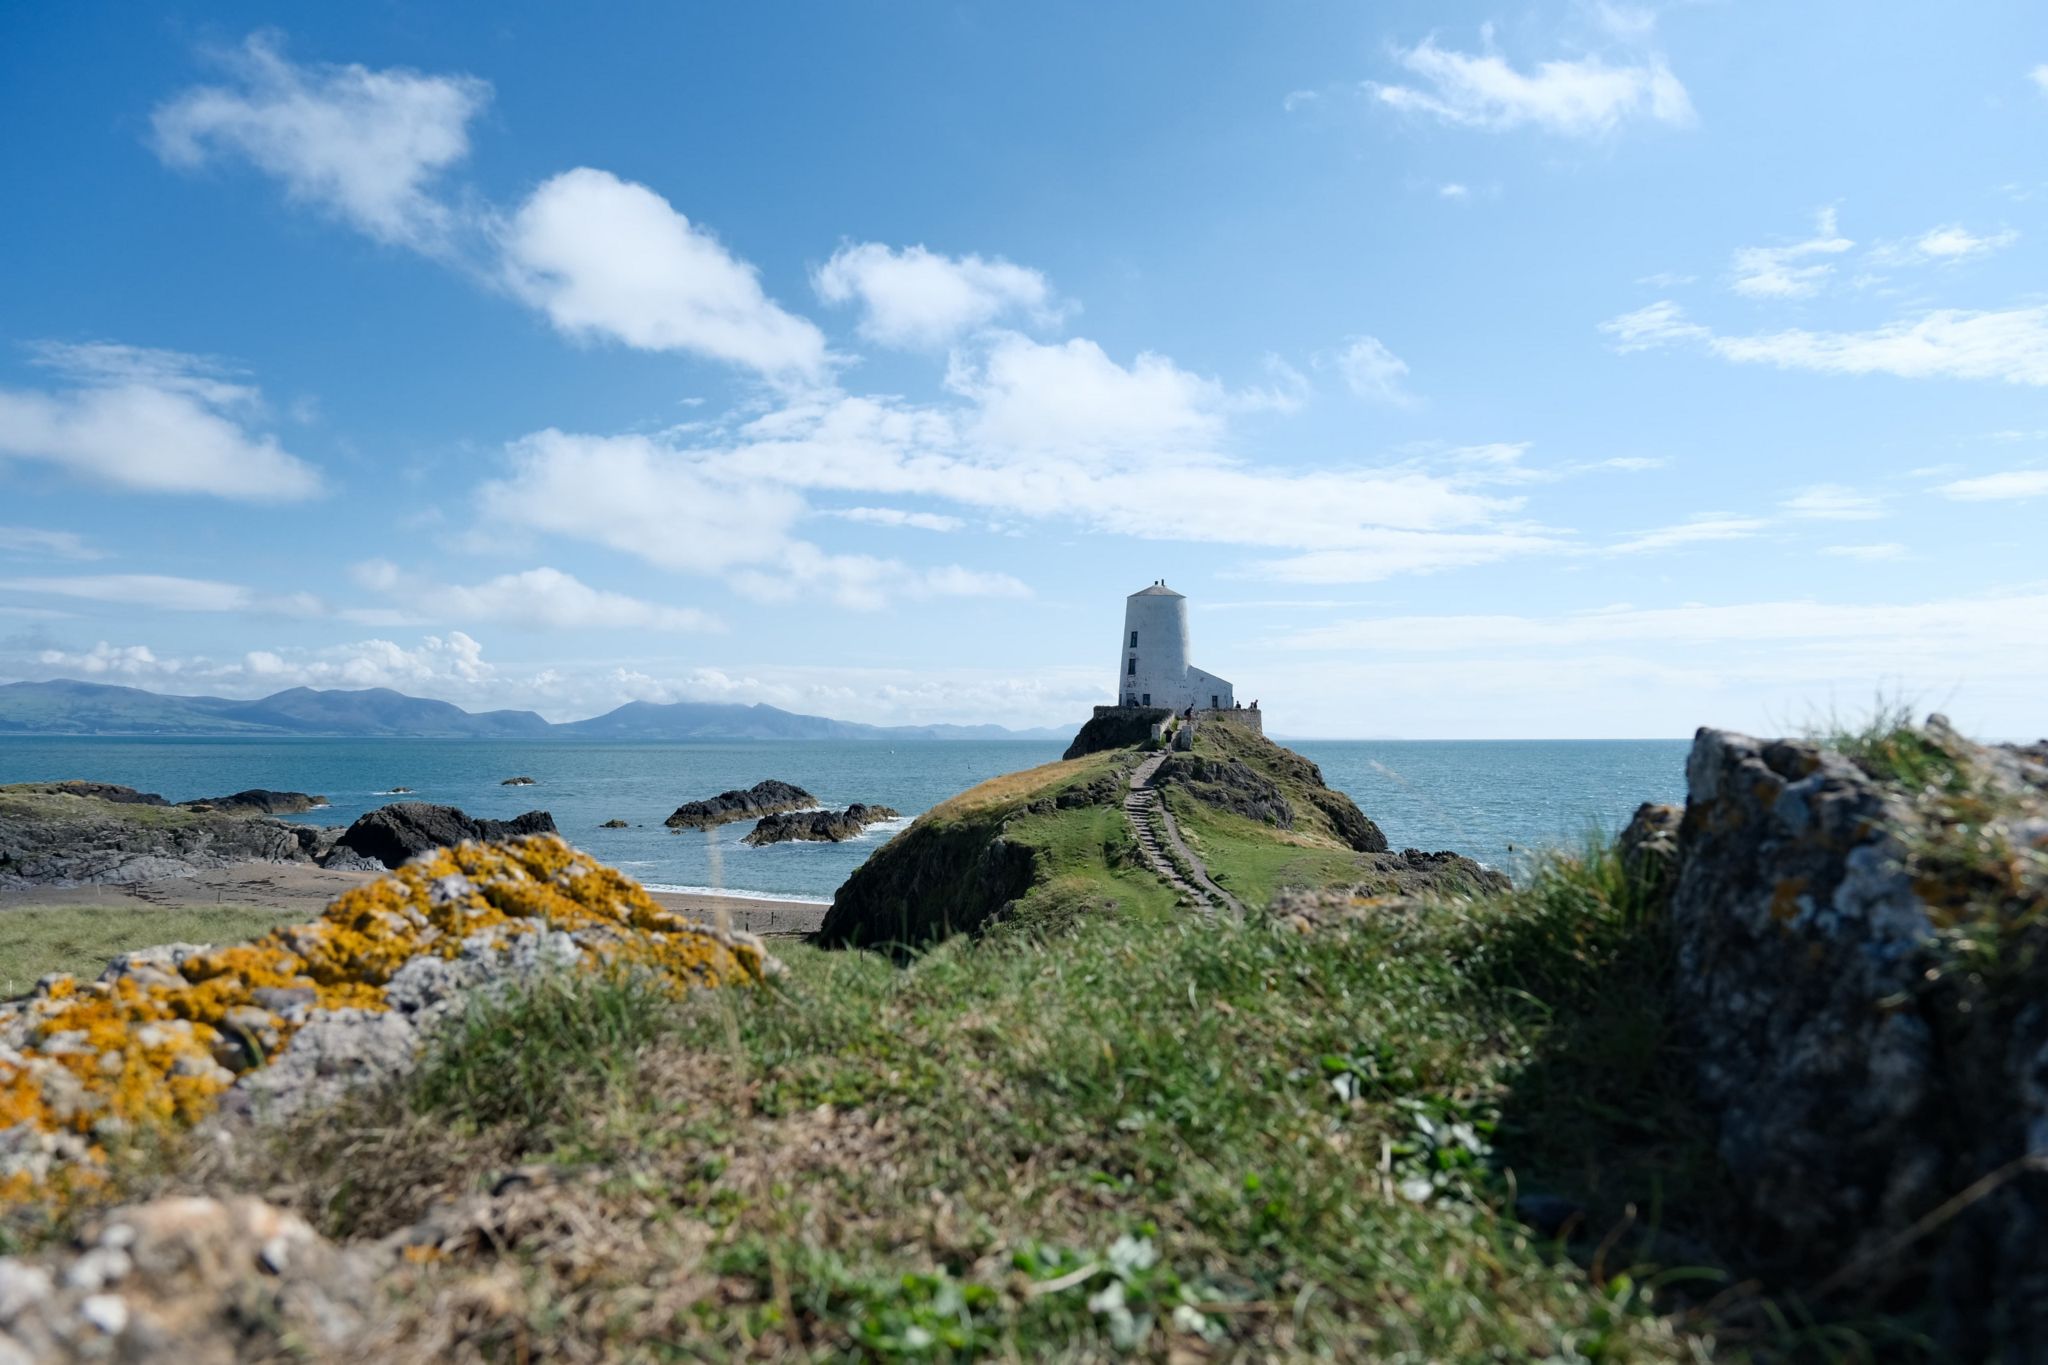 The lighthouse on Ynys Llanddwyn